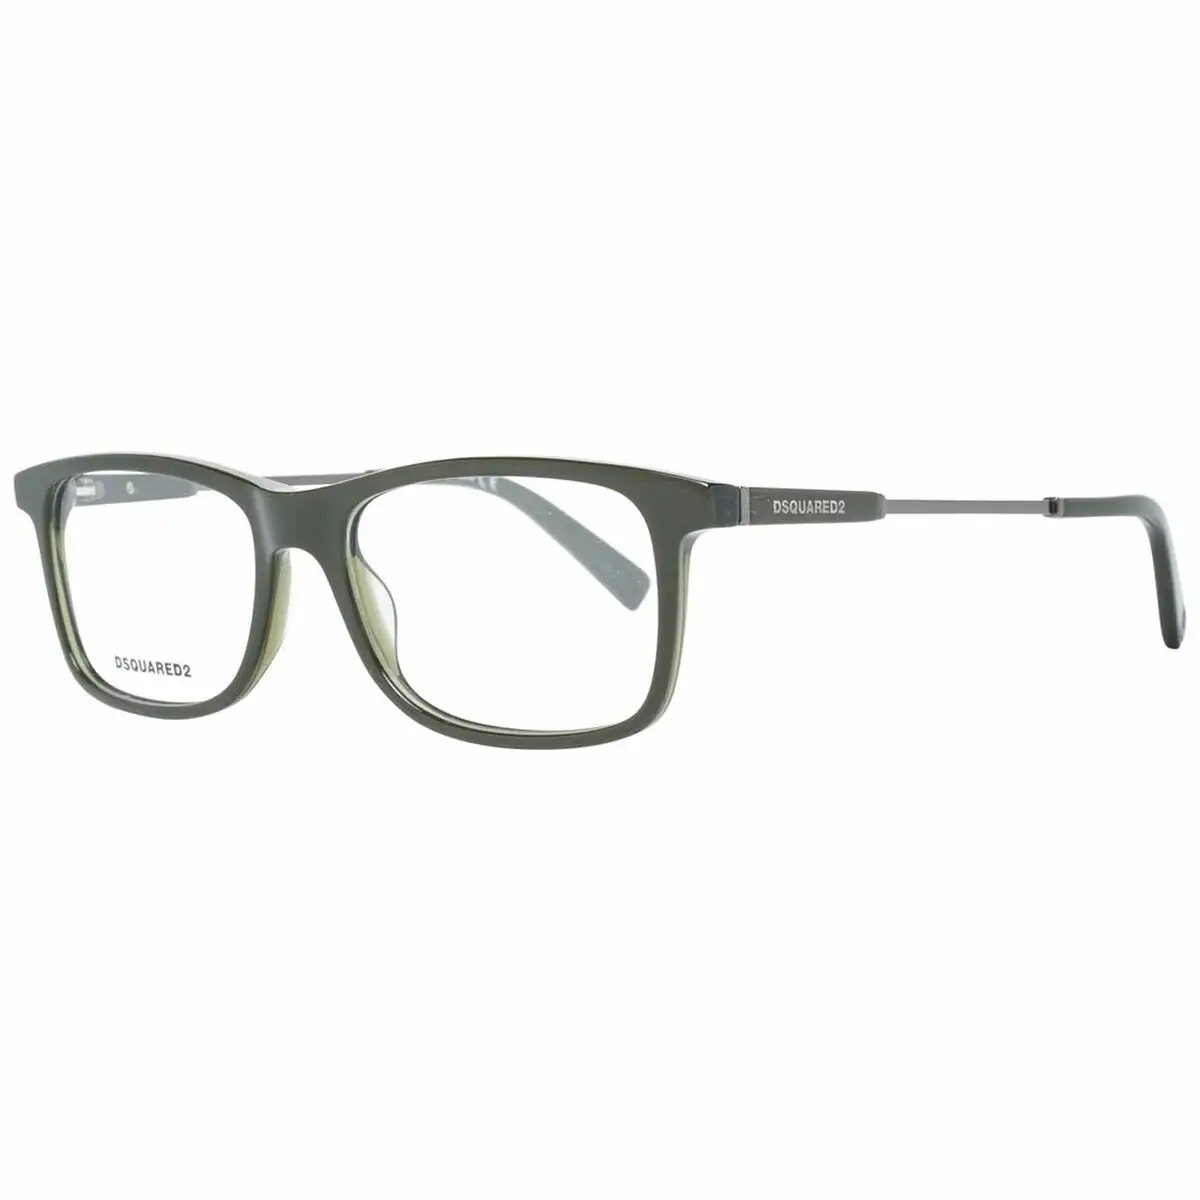 Monture de lunettes homme dsquared2 dq5278 53098_7337. DIAYTAR SENEGAL - Votre Plateforme Shopping de Confiance. Naviguez à travers nos rayons et choisissez des produits fiables qui répondent à vos besoins quotidiens.